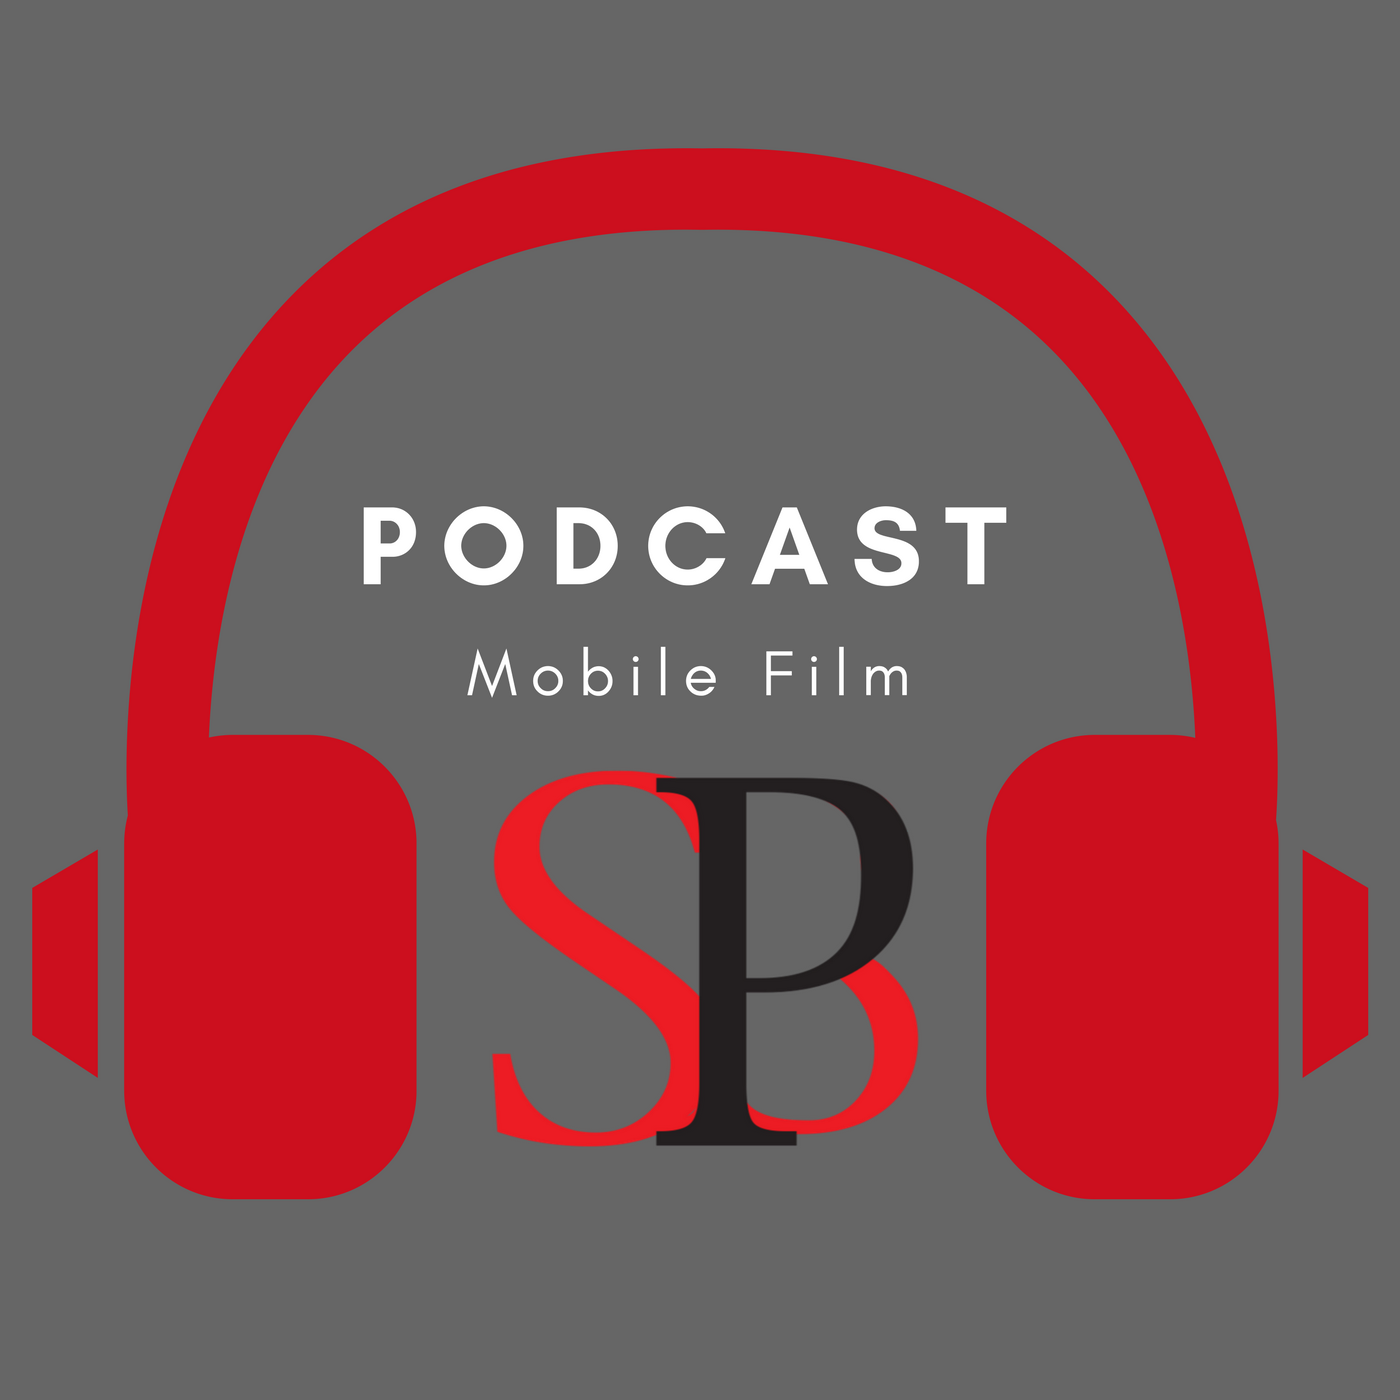 SBP Podcast logo